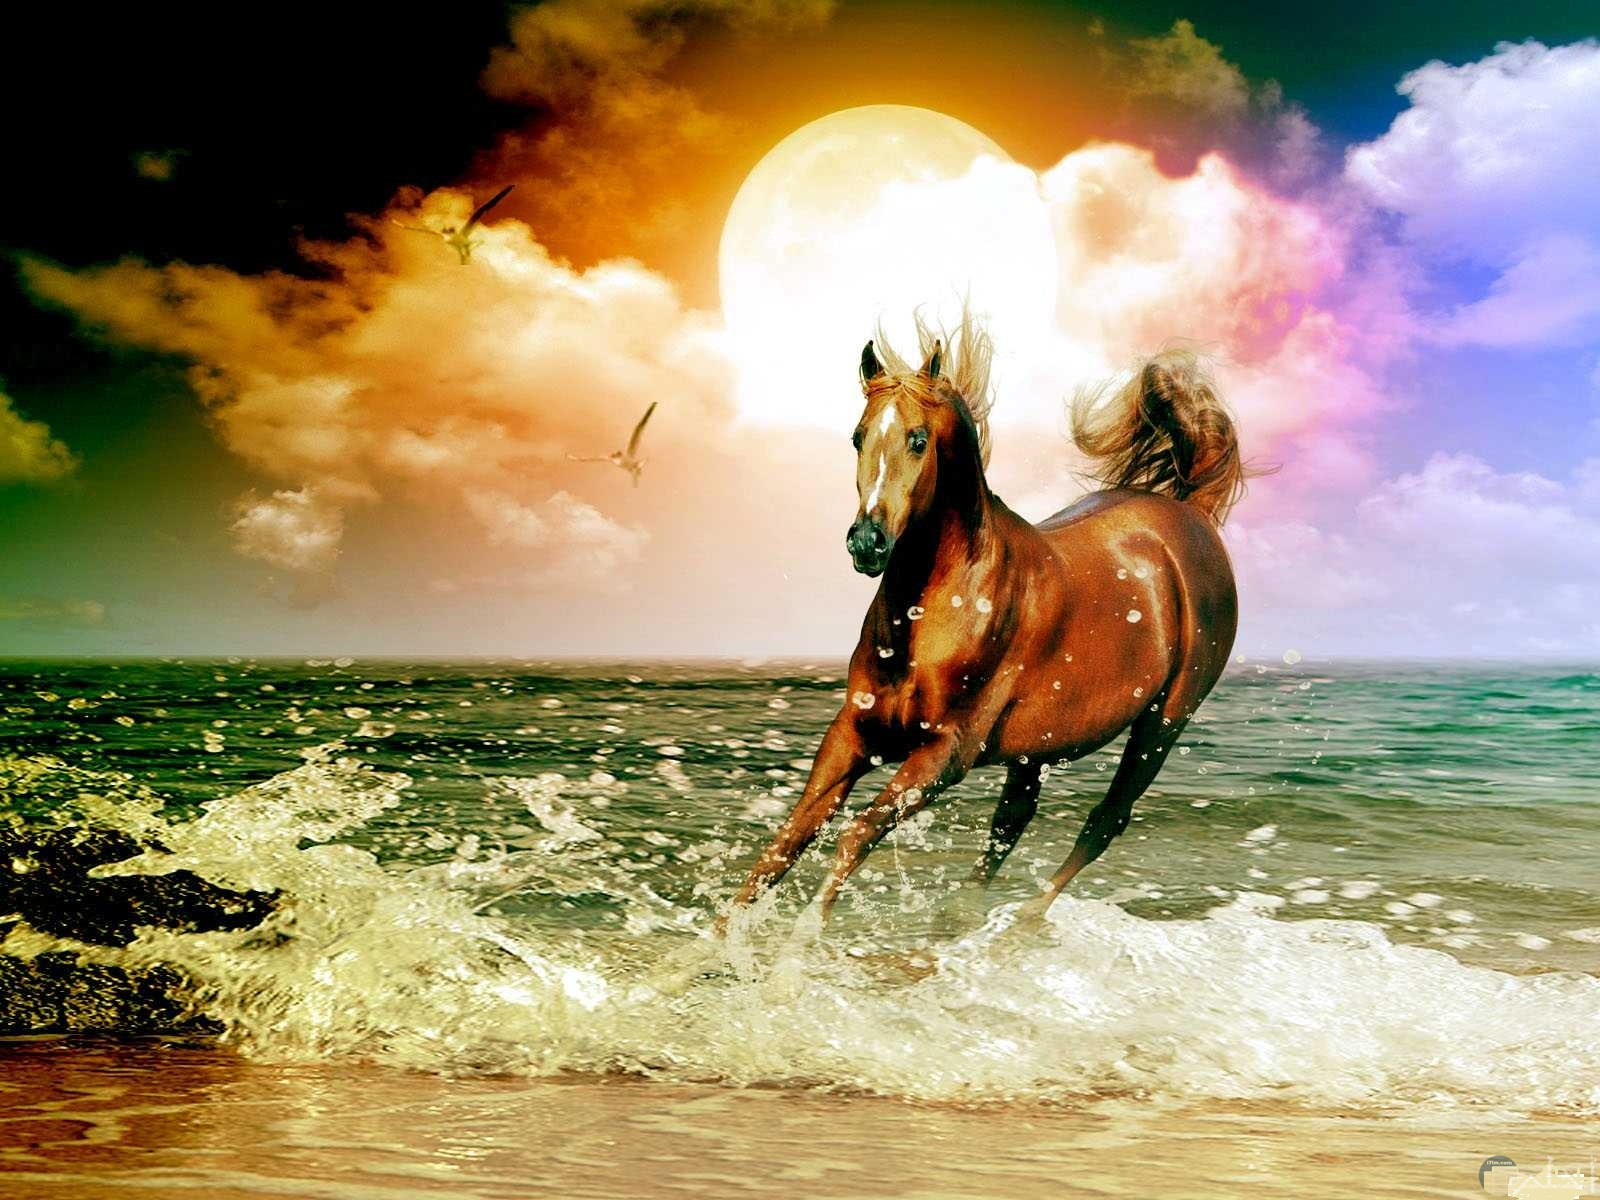 حصان يجري على رمال الشاطئ و تداعبه أمواج البحر.